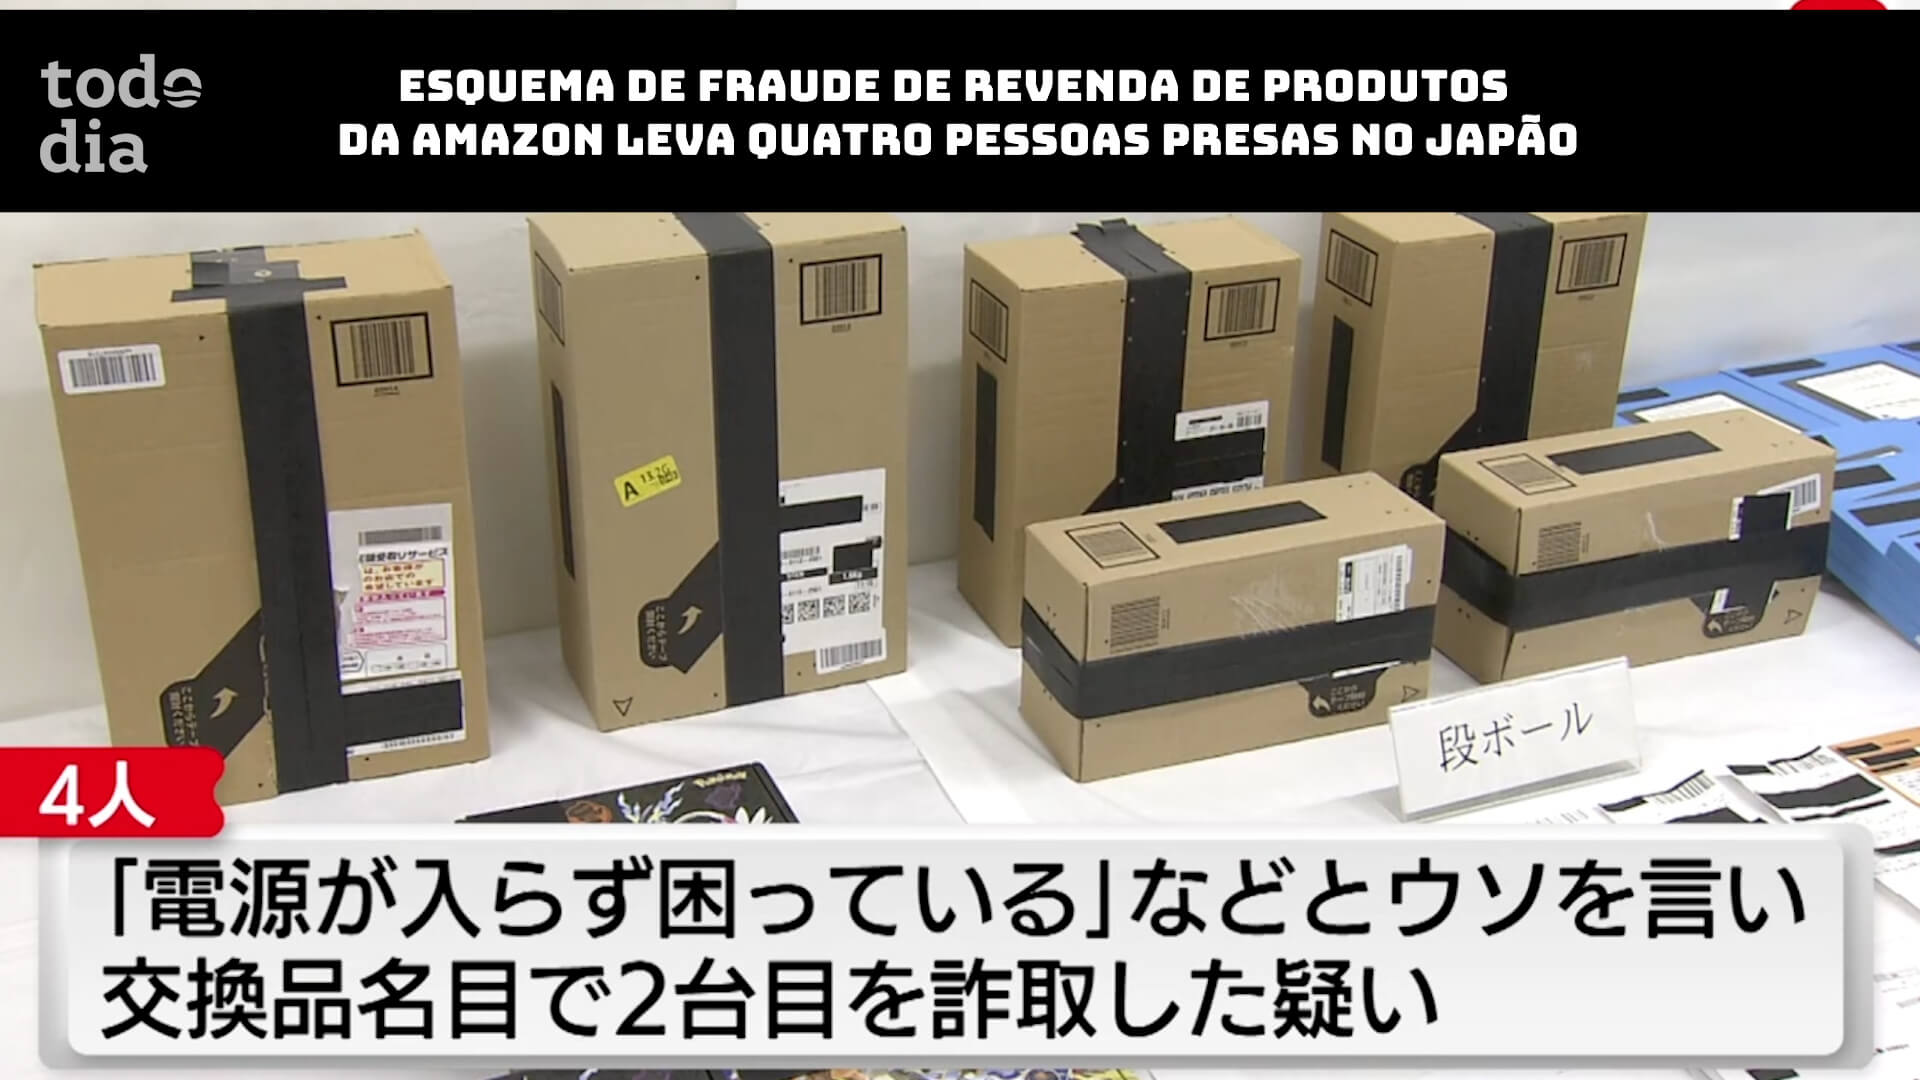 Esquema de fraude de revenda de produtos da Amazon leva quatro pessoas presas no Japão 